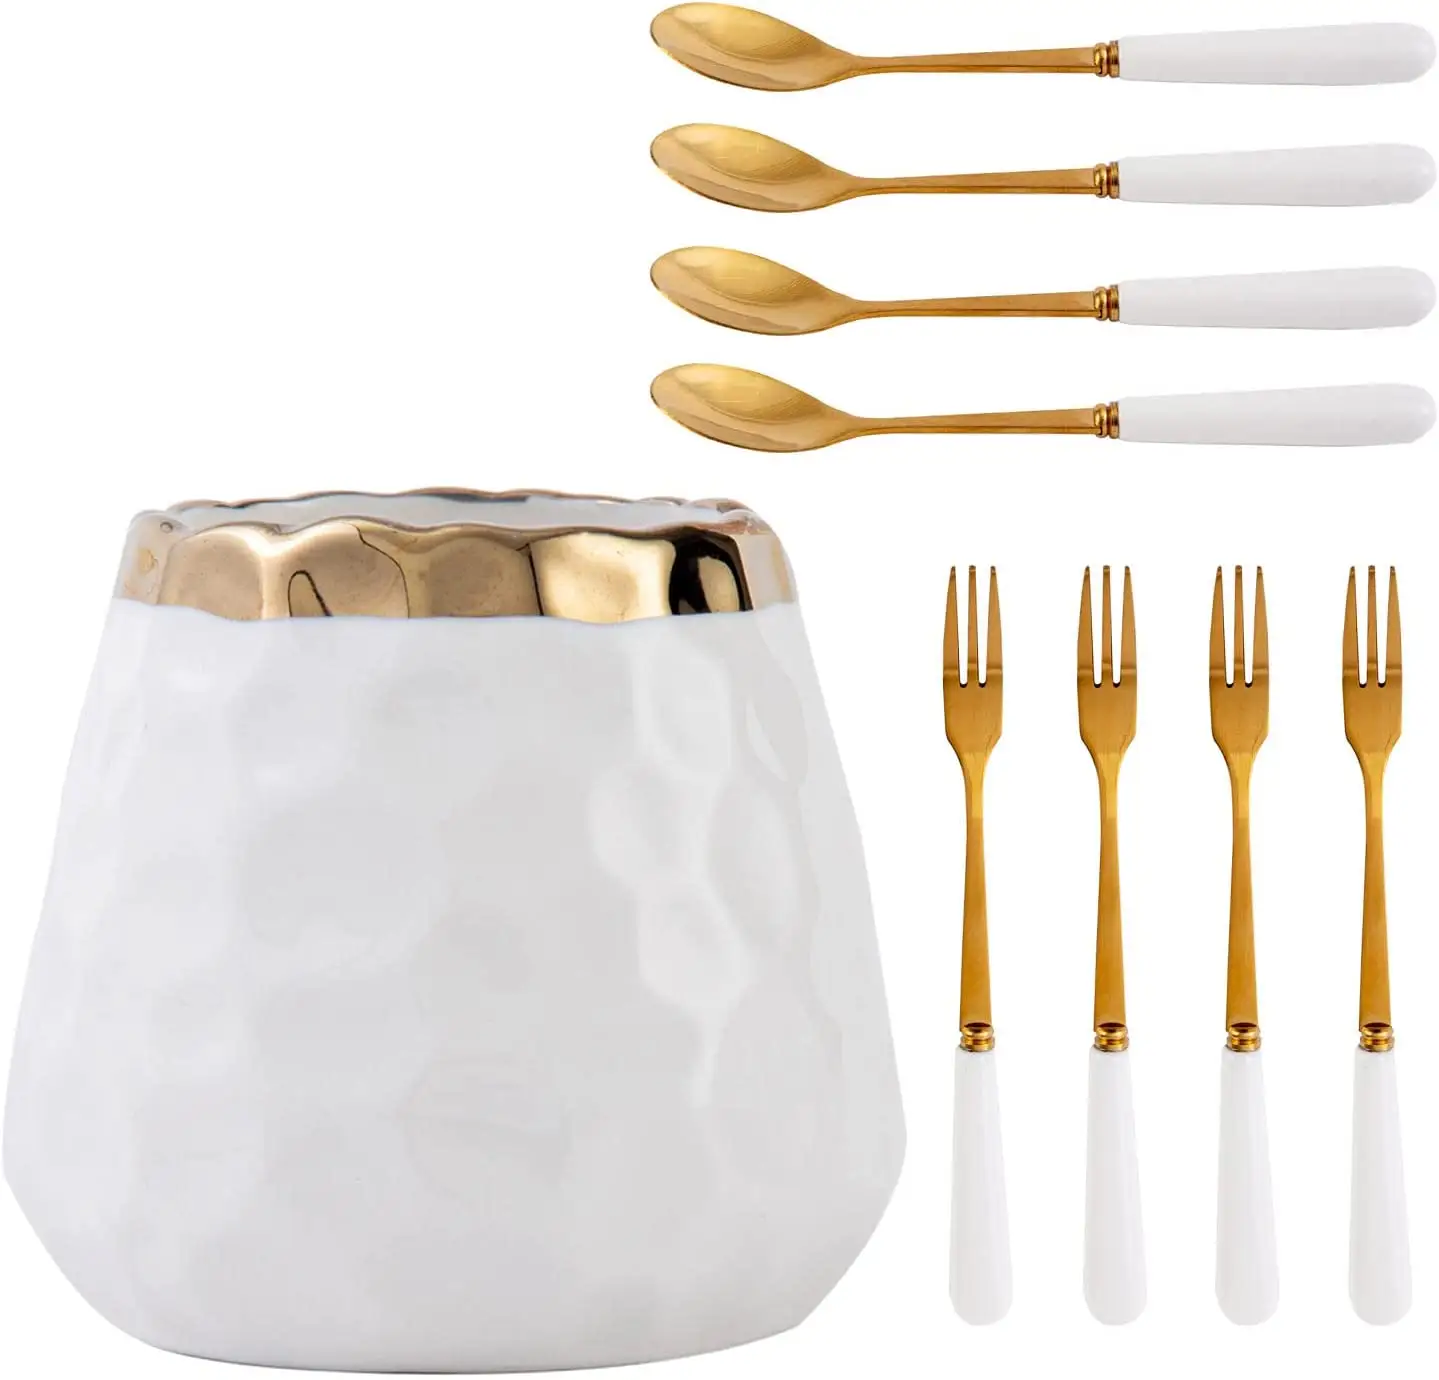 Роскошный керамический держатель для посуды, палочки для еды, фарфоровая посуда для легкой очистки, набор свадебных столовых приборов Западного дизайна